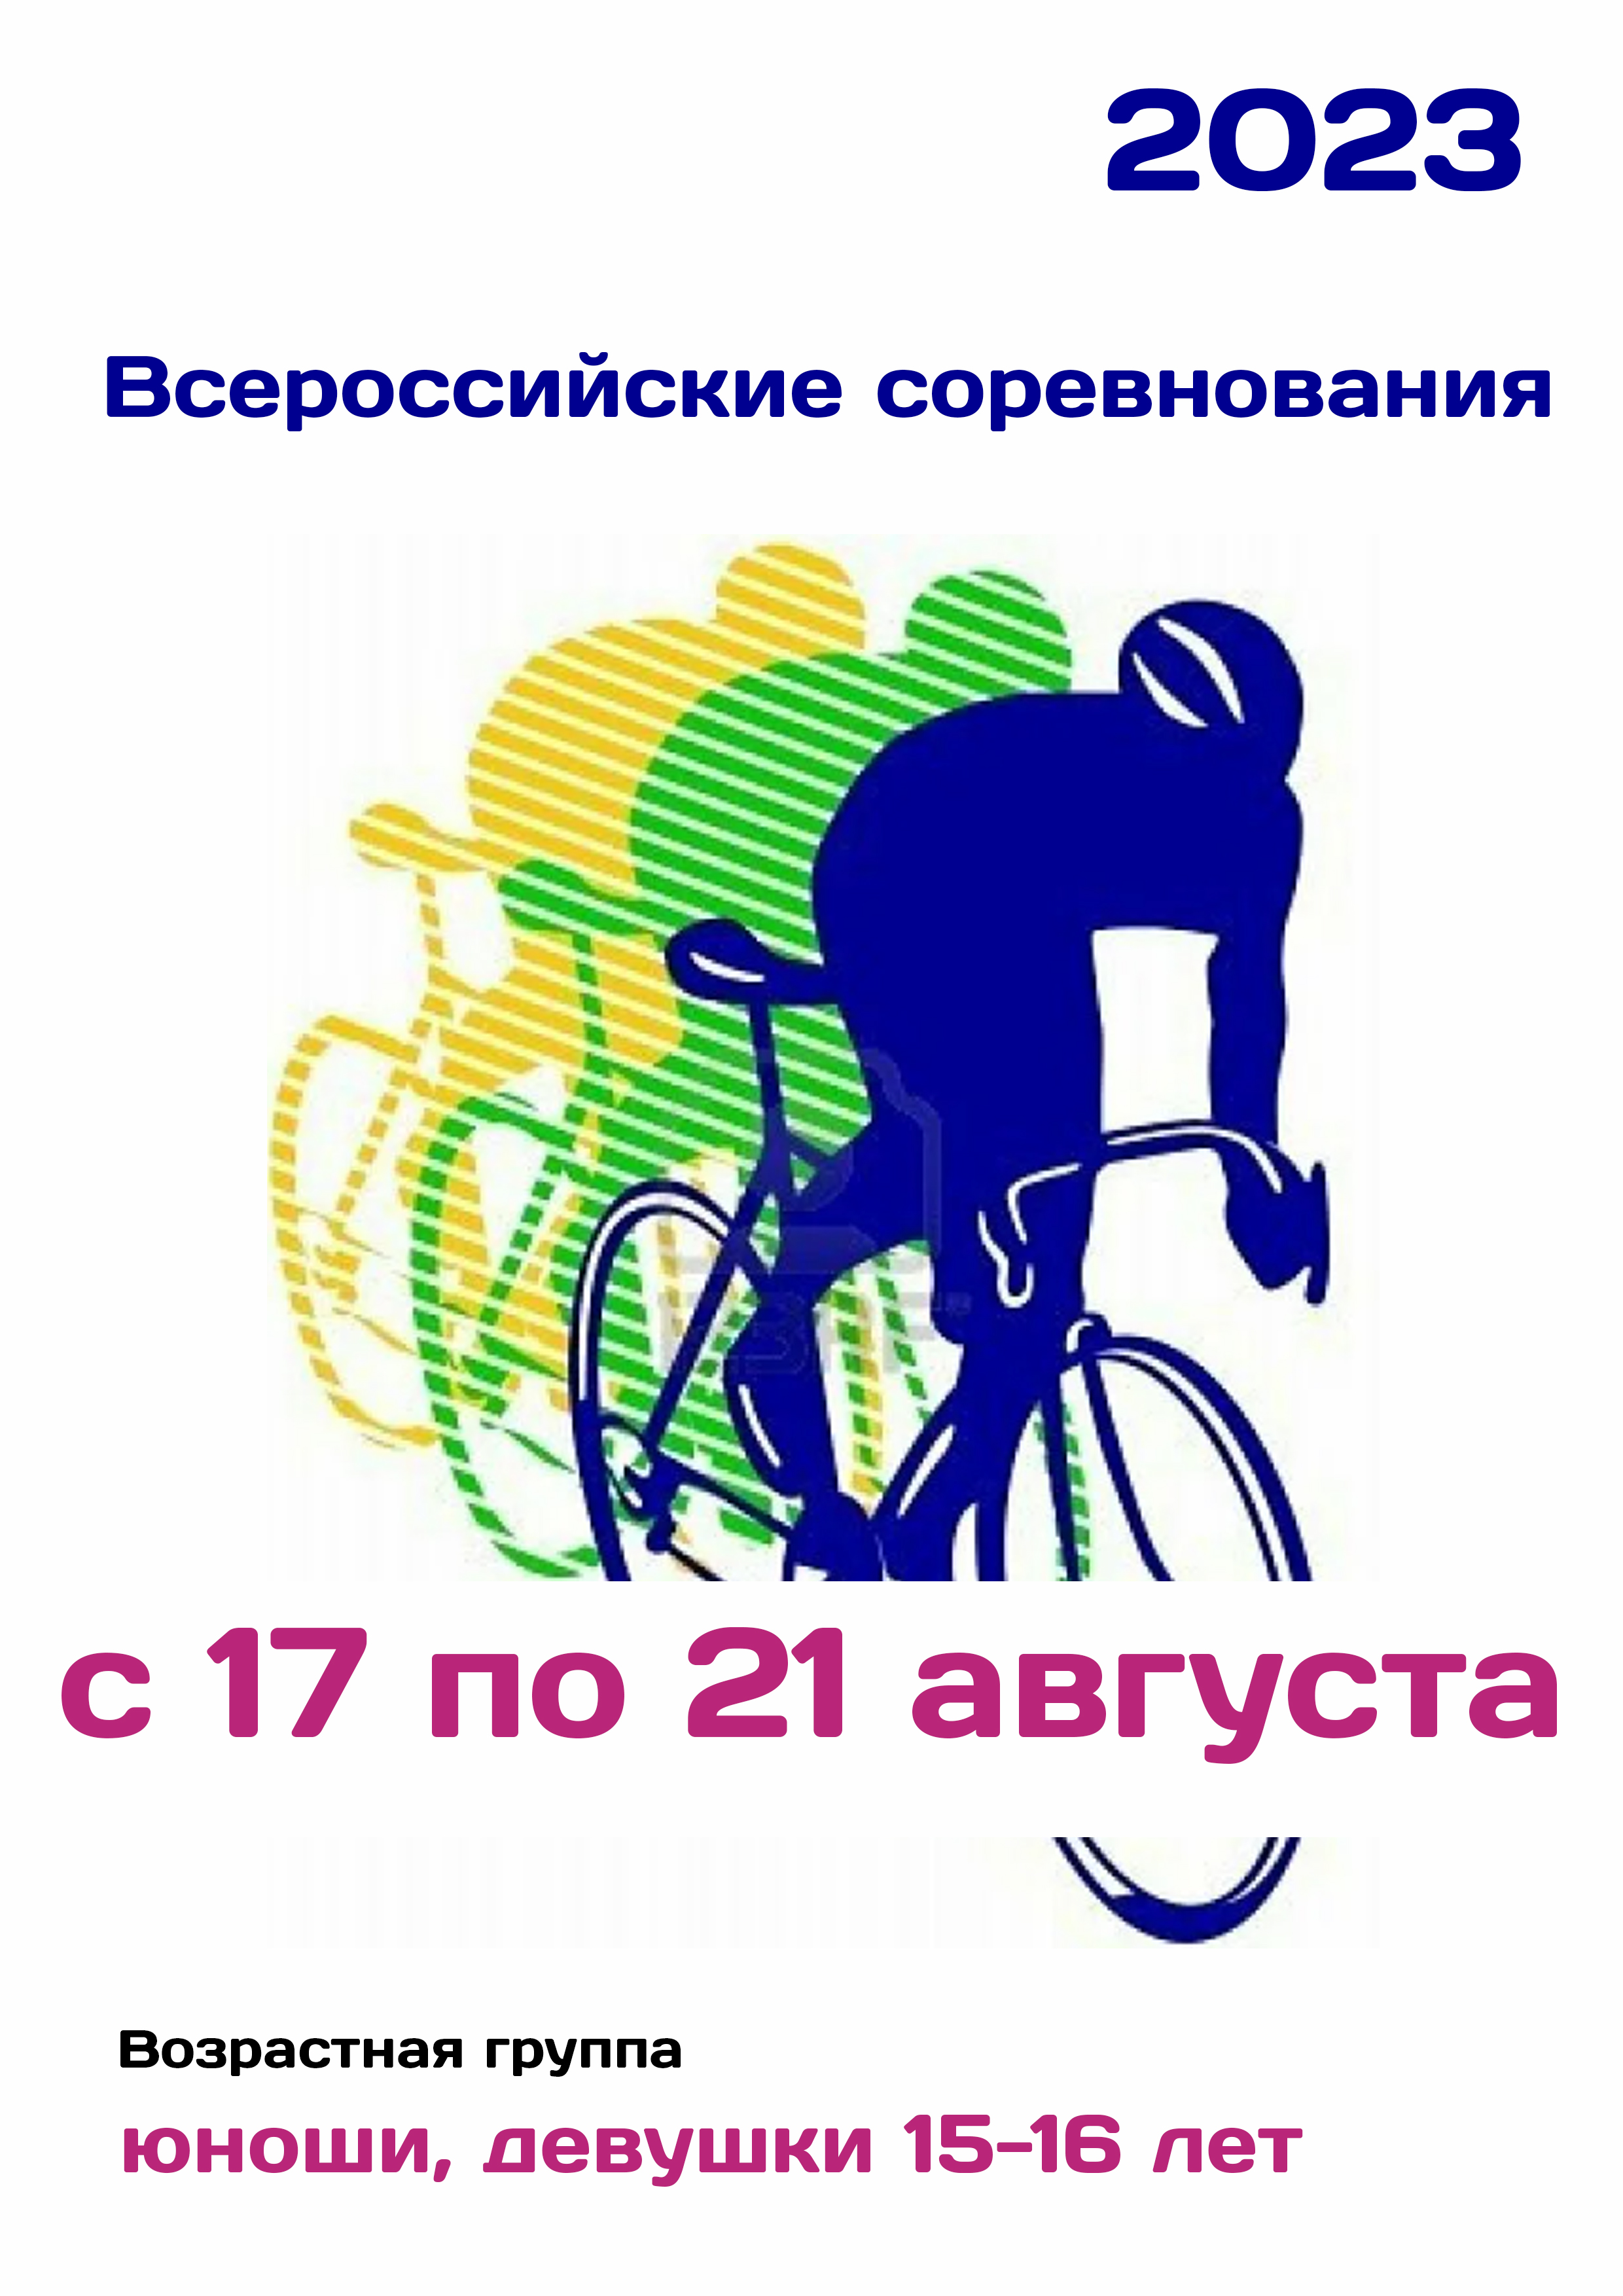 Всероссийские соревнования по велоспорту 17  augusztus
 2023  év
 